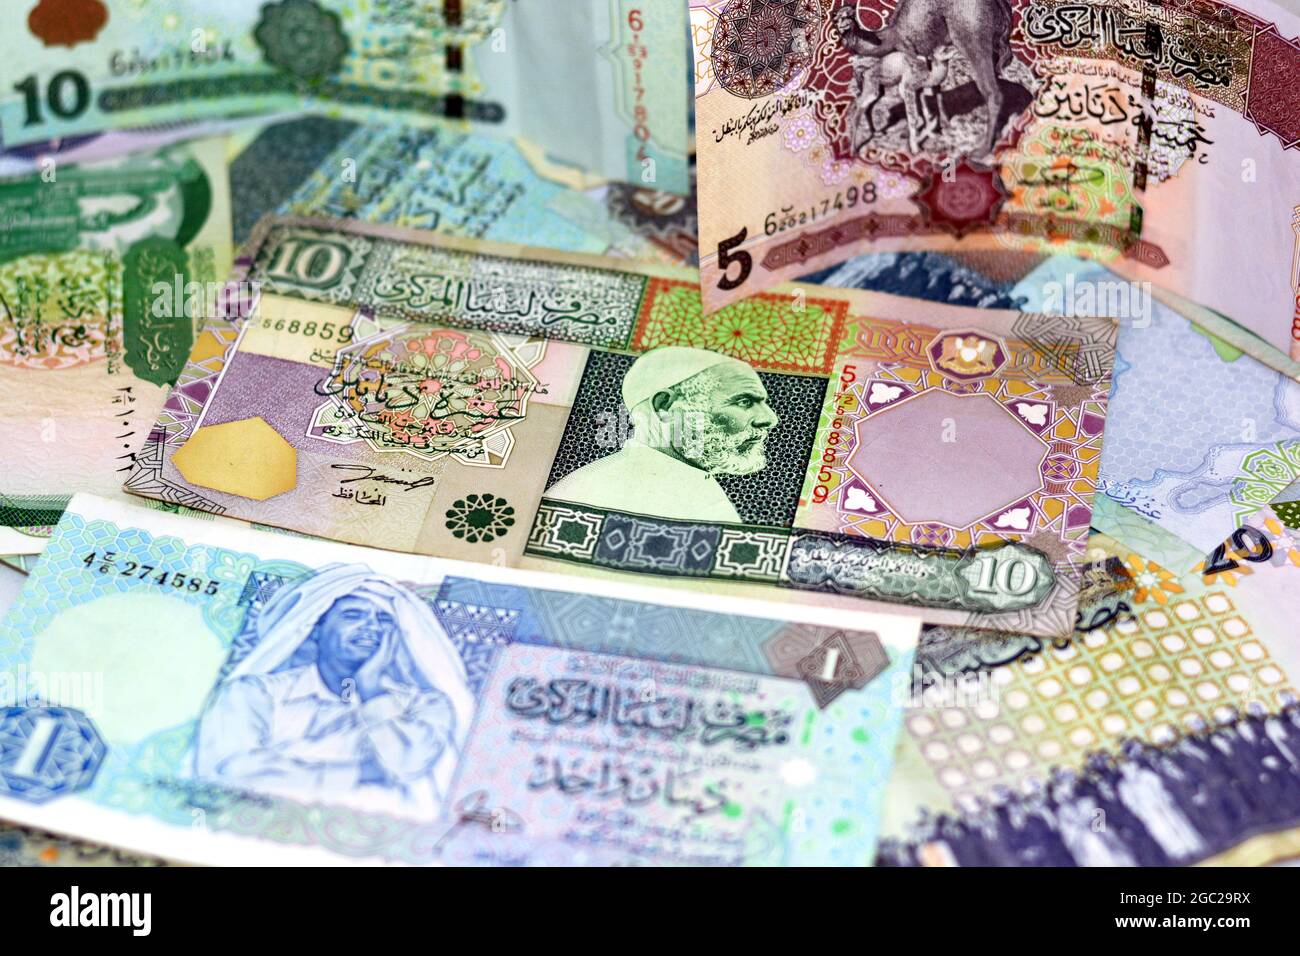 Contexte de l'argent libyen dinars billets, anciens billets en monnaie libyenne, le dinar libyen est la devise de la Libye, des billets différents de la Libye Banque D'Images